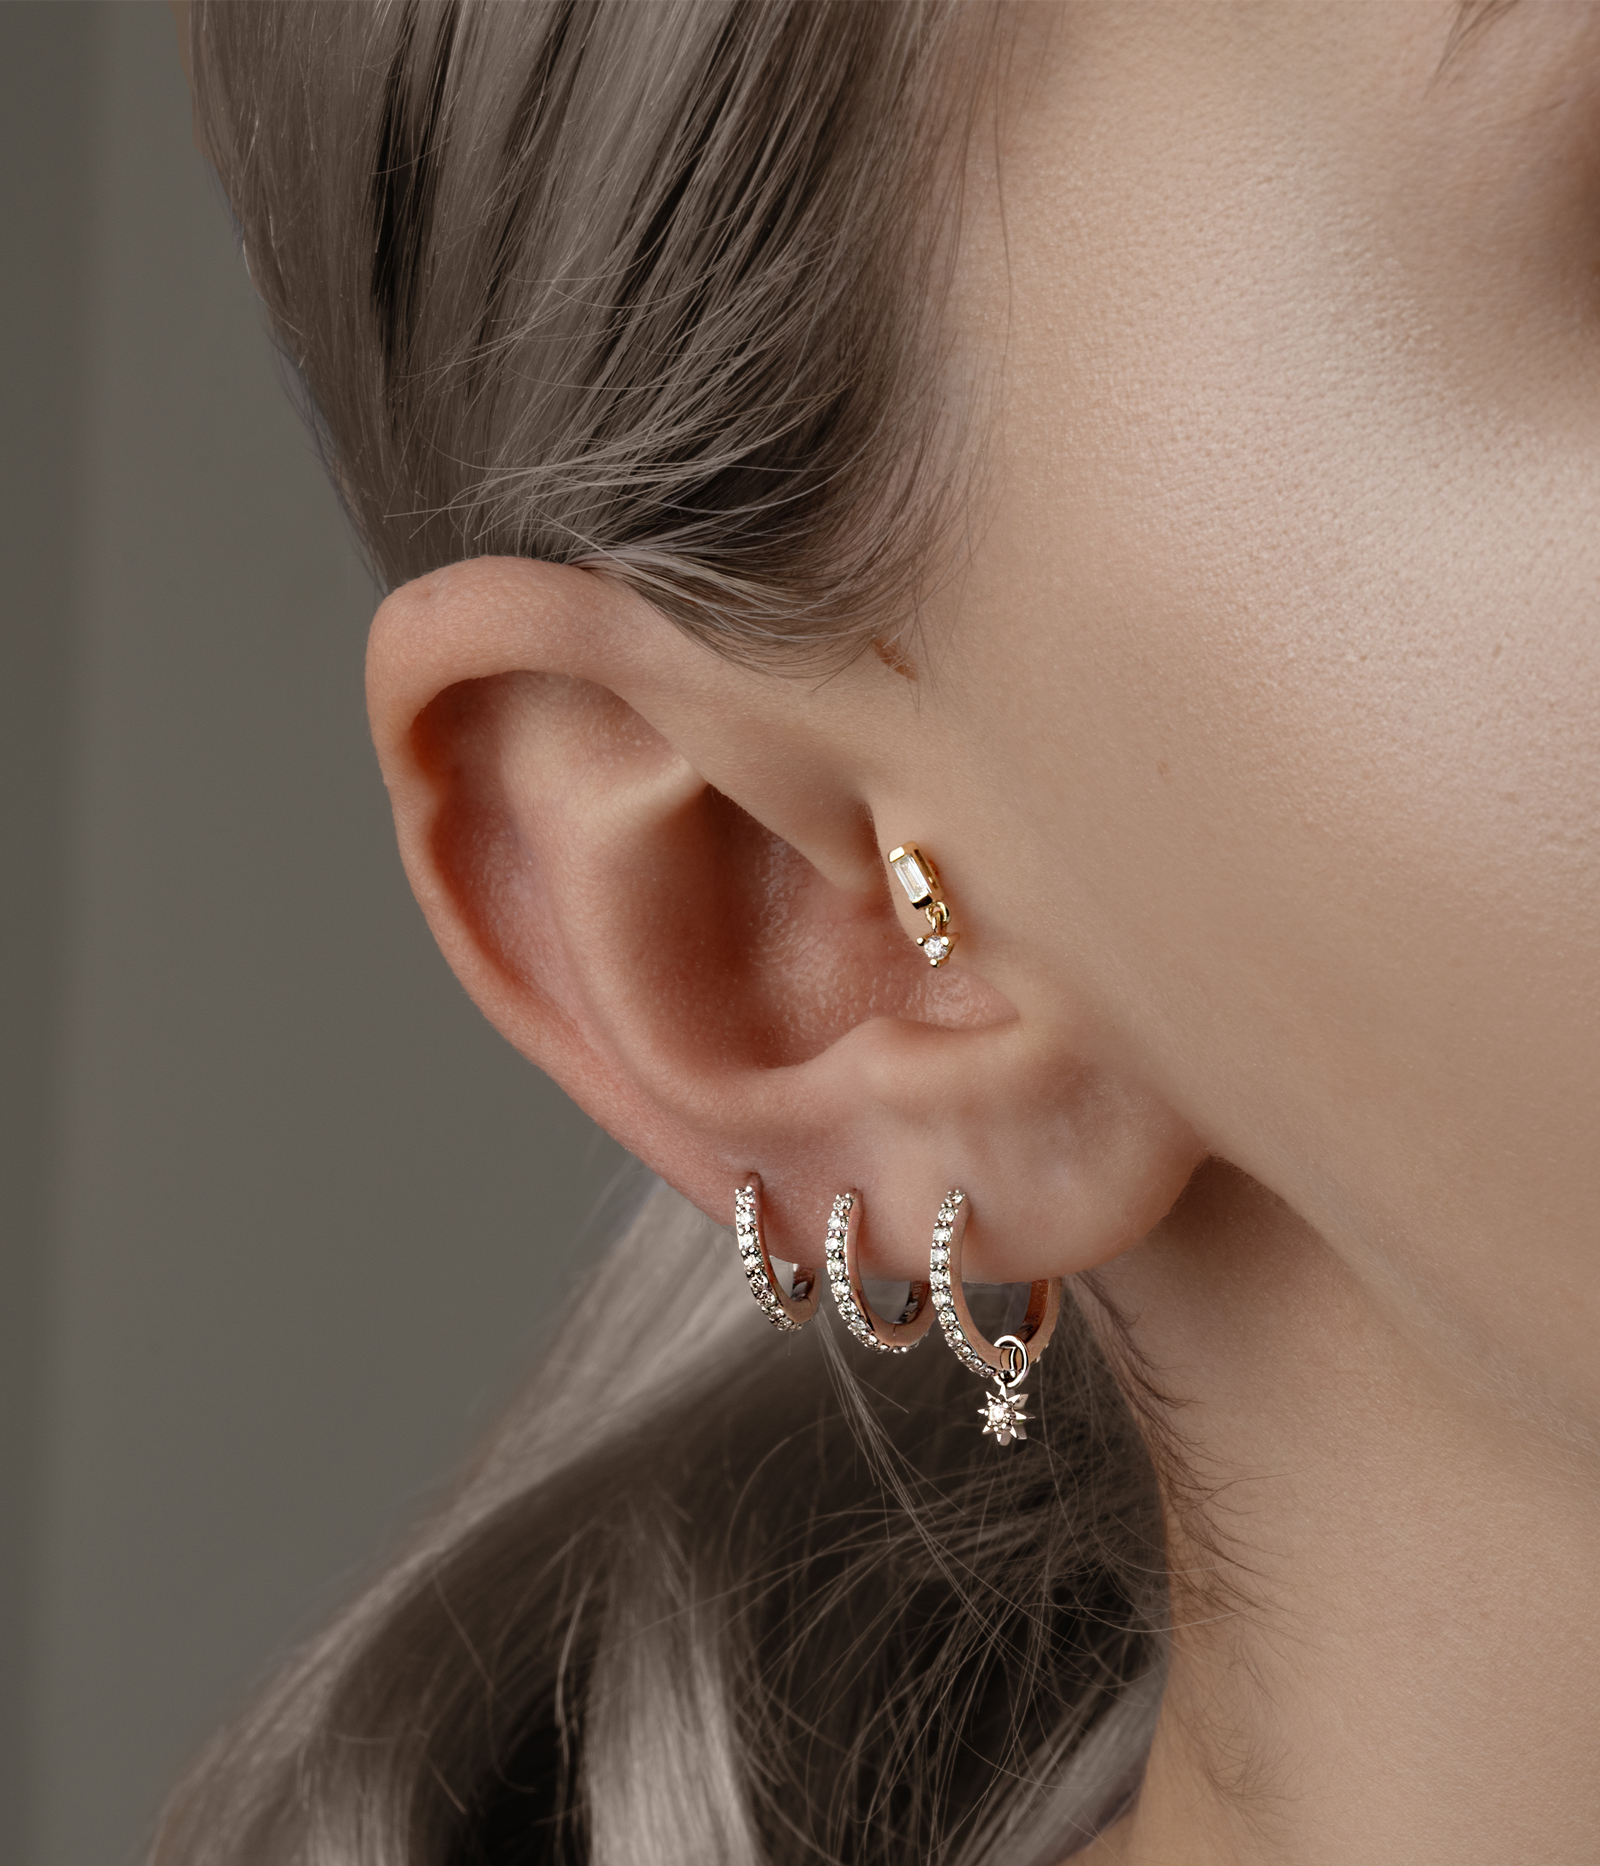 side of woman's face with multiple earrings in ear